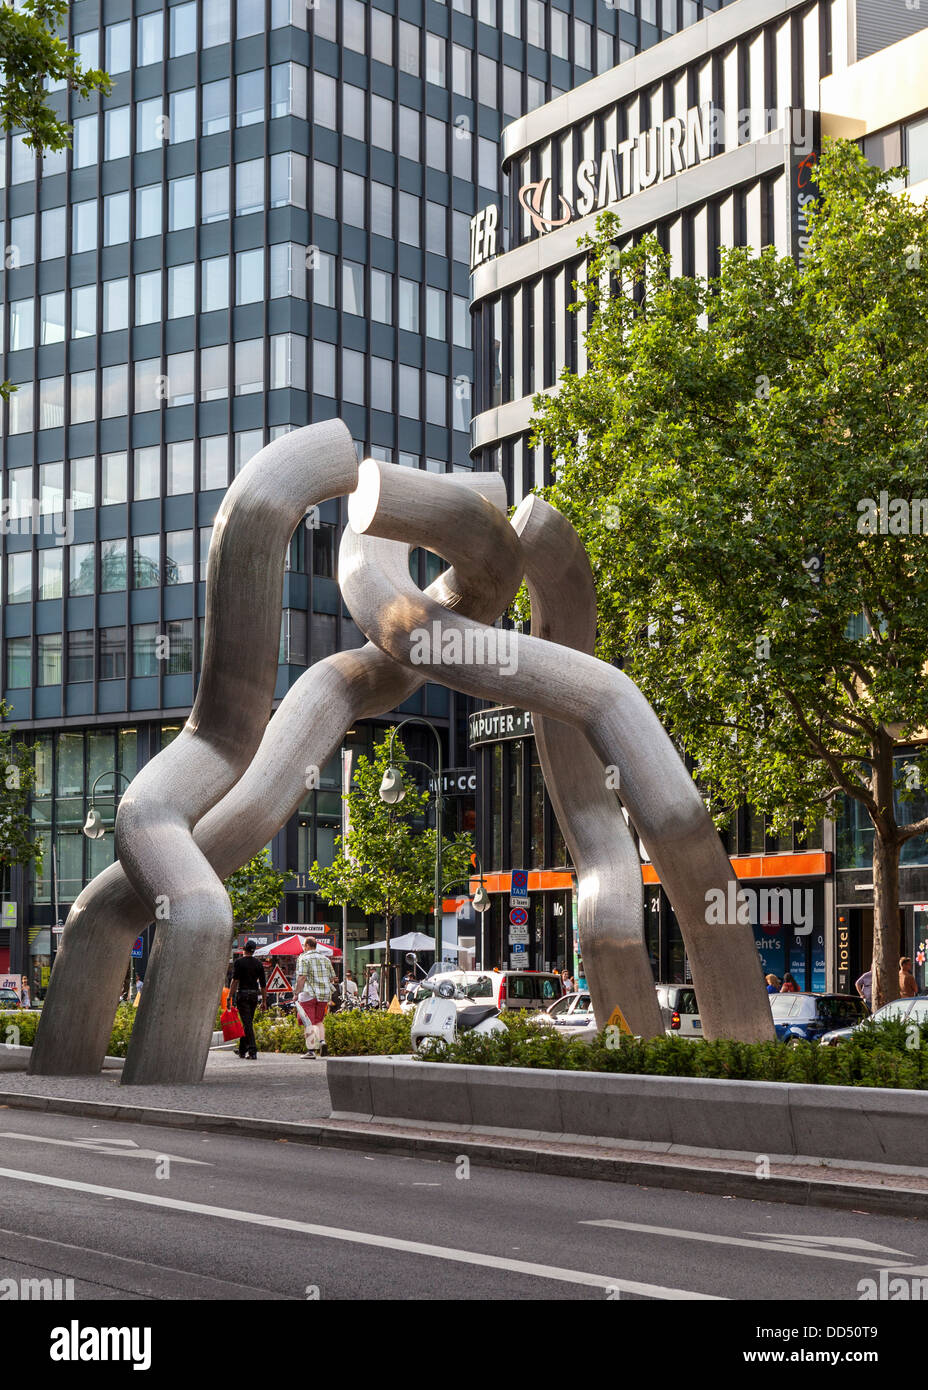 Travaux d'art public - les liens cassés de la sculpture représente la chaîne de division entre l'Est et l'ouest de Berlin, Berlin Tauentzienstrasse sur Banque D'Images